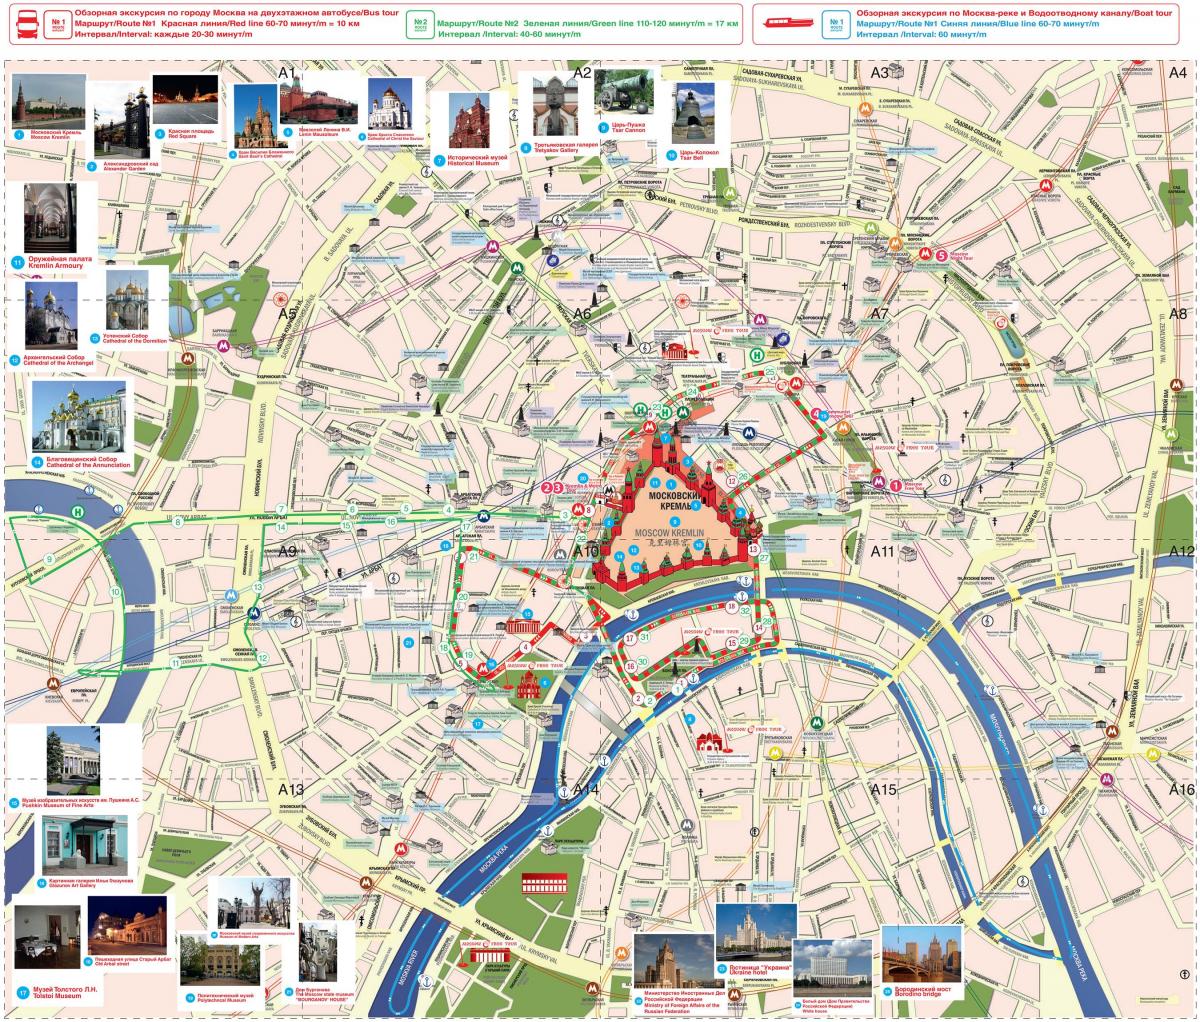 ماسکو کی توجہ کا نقشہ